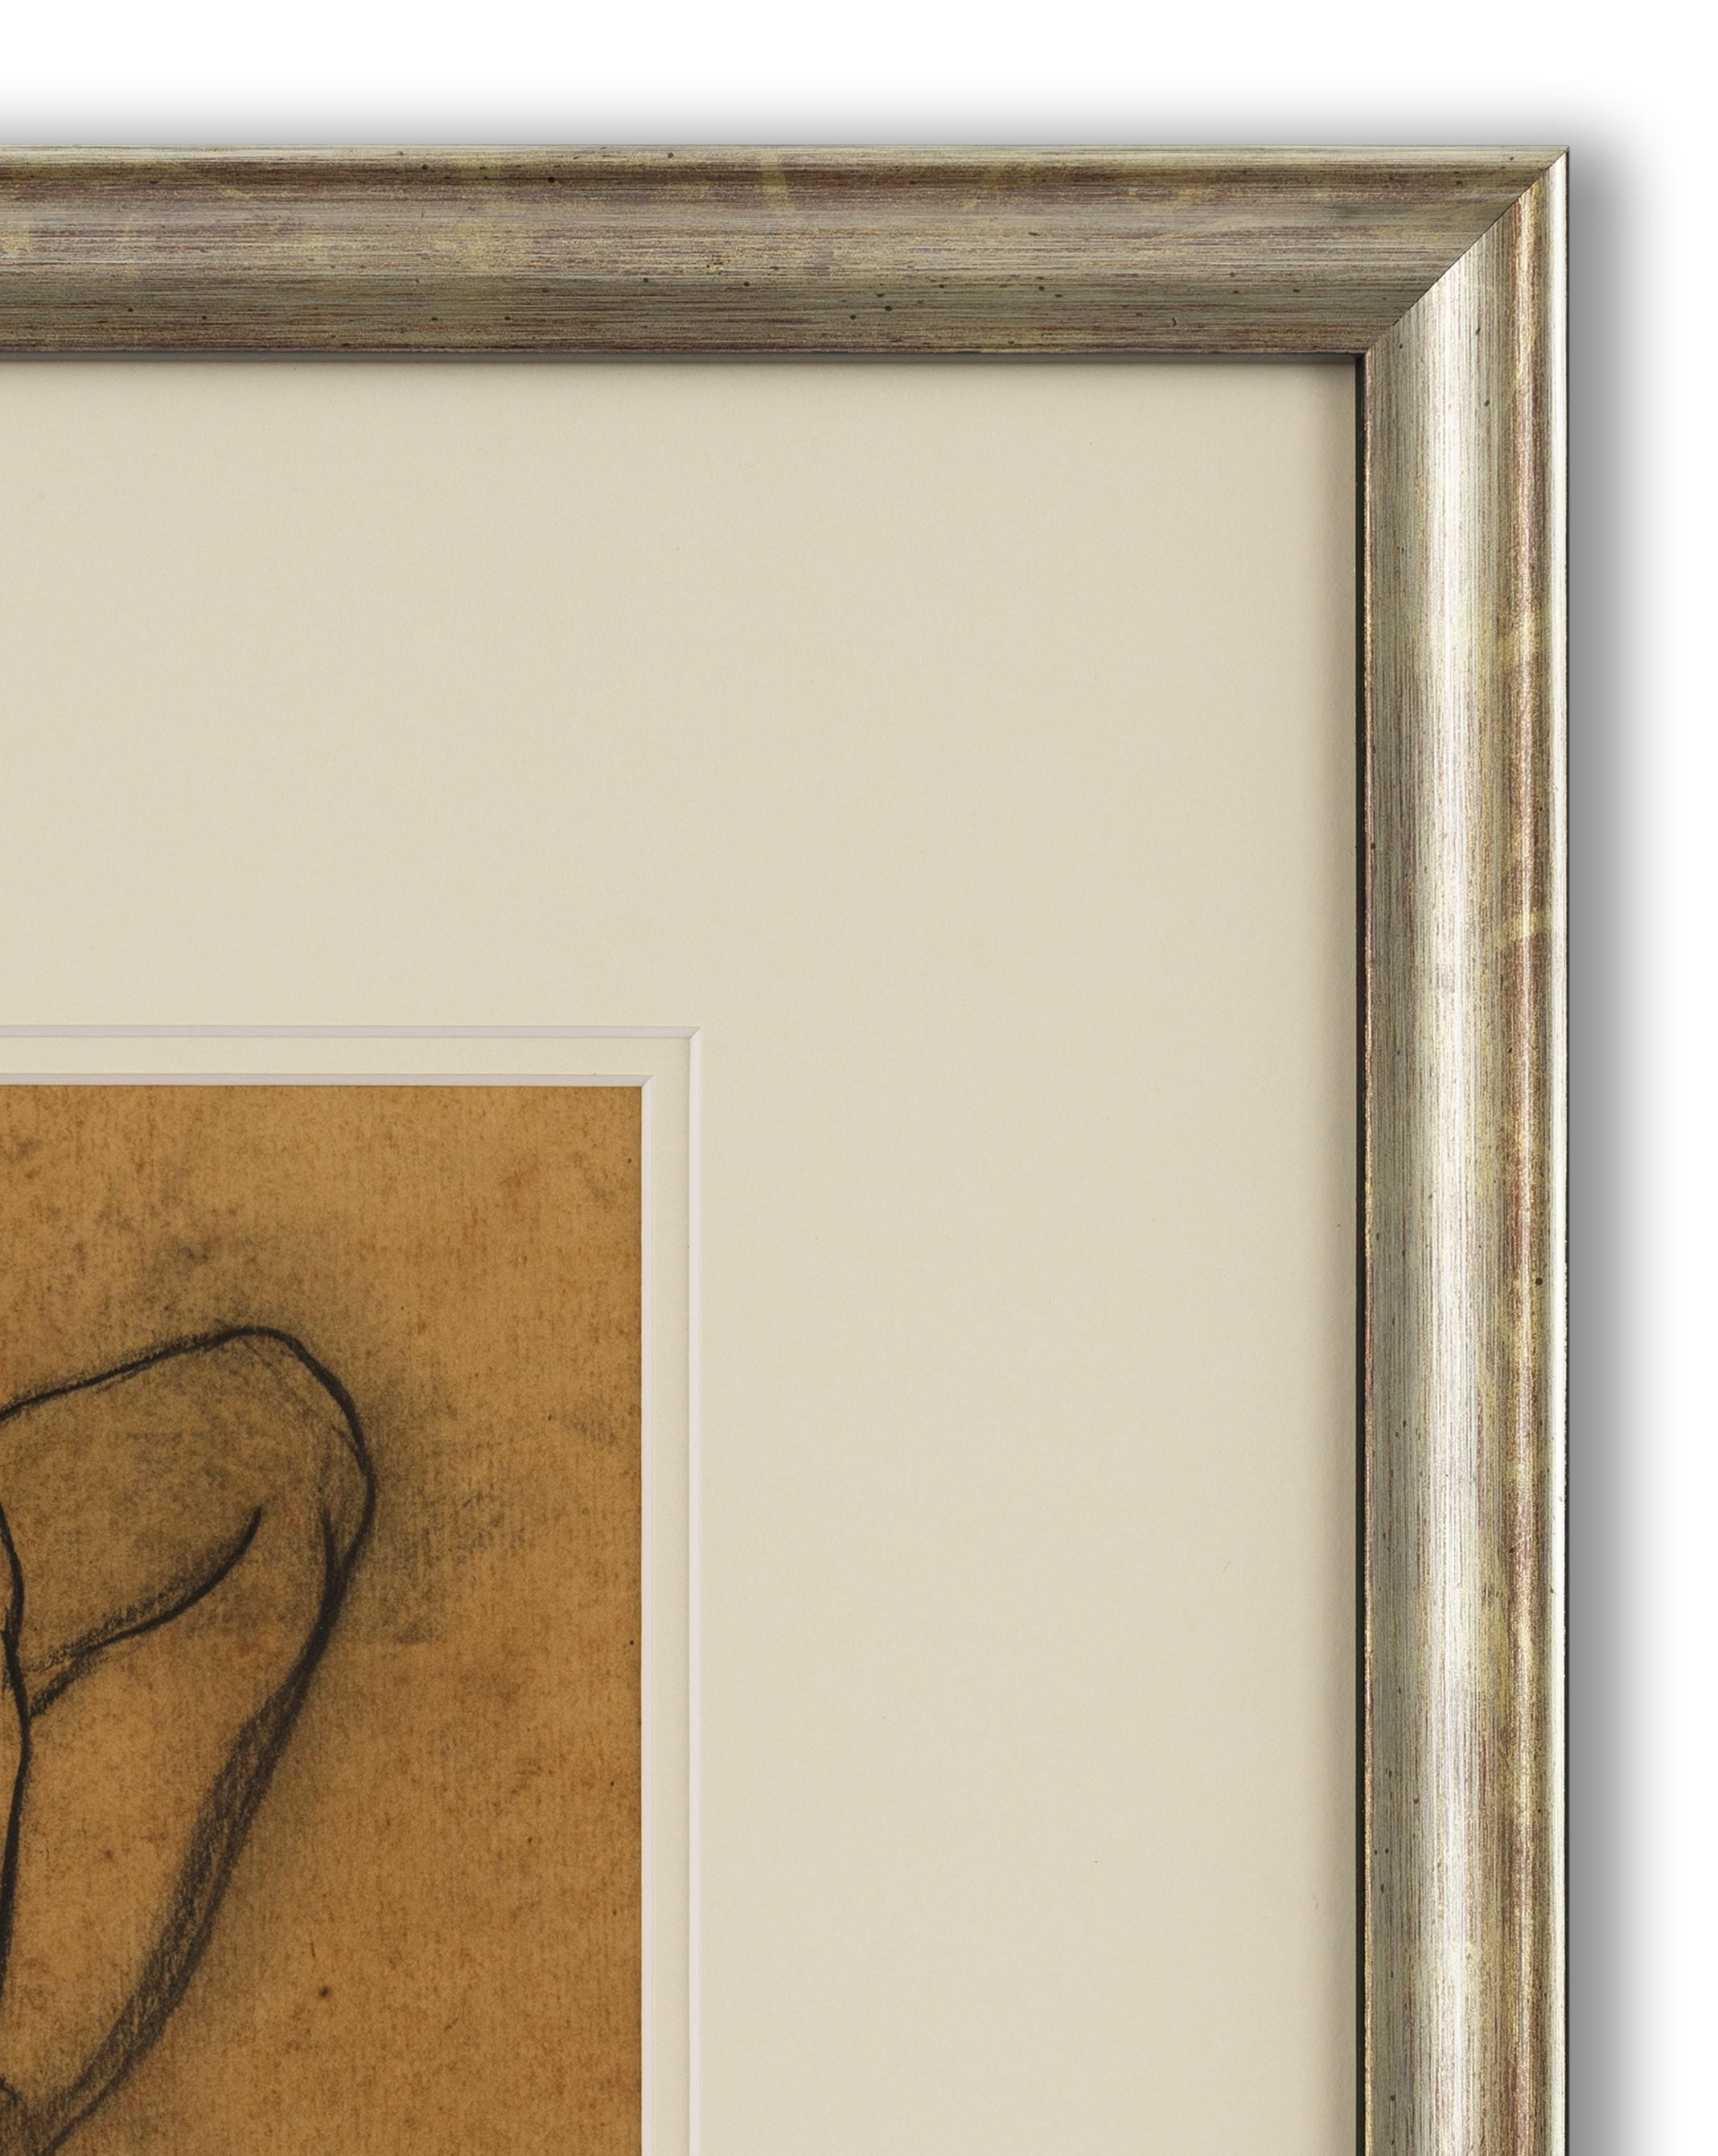 Schwarze und rote Kreide auf Papier, signiert und datiert (unten rechts), 31cm x 27cm (50cm x 45cm gerahmt). 

Delmotte war ein Maler, Zeichner, Aquarellist und belgischer Bildhauer. Zunächst ein realistischer Maler, wurde er vom Expressionismus zu